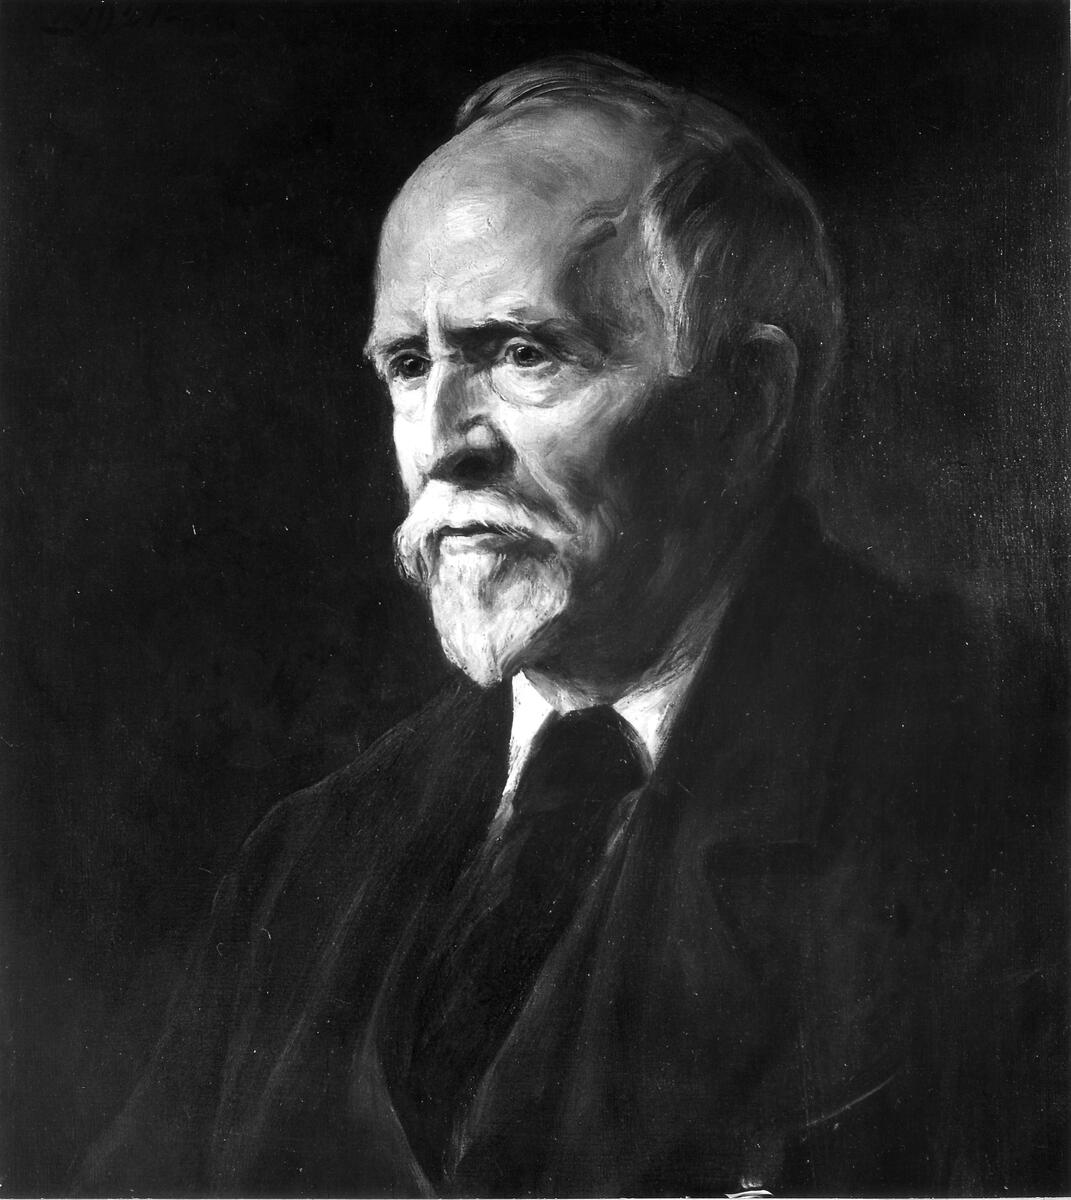 Porträtt av författaren Olof Högberg (1855-1932), Njurunda. vid 66 års ålder, bröstbild, vänd åt vänster, huvudet i halvprofil åt vänster, blå ögon, blicken till vänster, grå ögonbryn, kal hjässa, grått hår, gråa mustascher och grått hakskägg. Han bär svart uppknäppt kavaj, väst, vit skjorta och mörk slips. Mörkbrun bakgrund. konstnär fru Hildegard Thorell (1850-1930), Stockholm, 1921. 